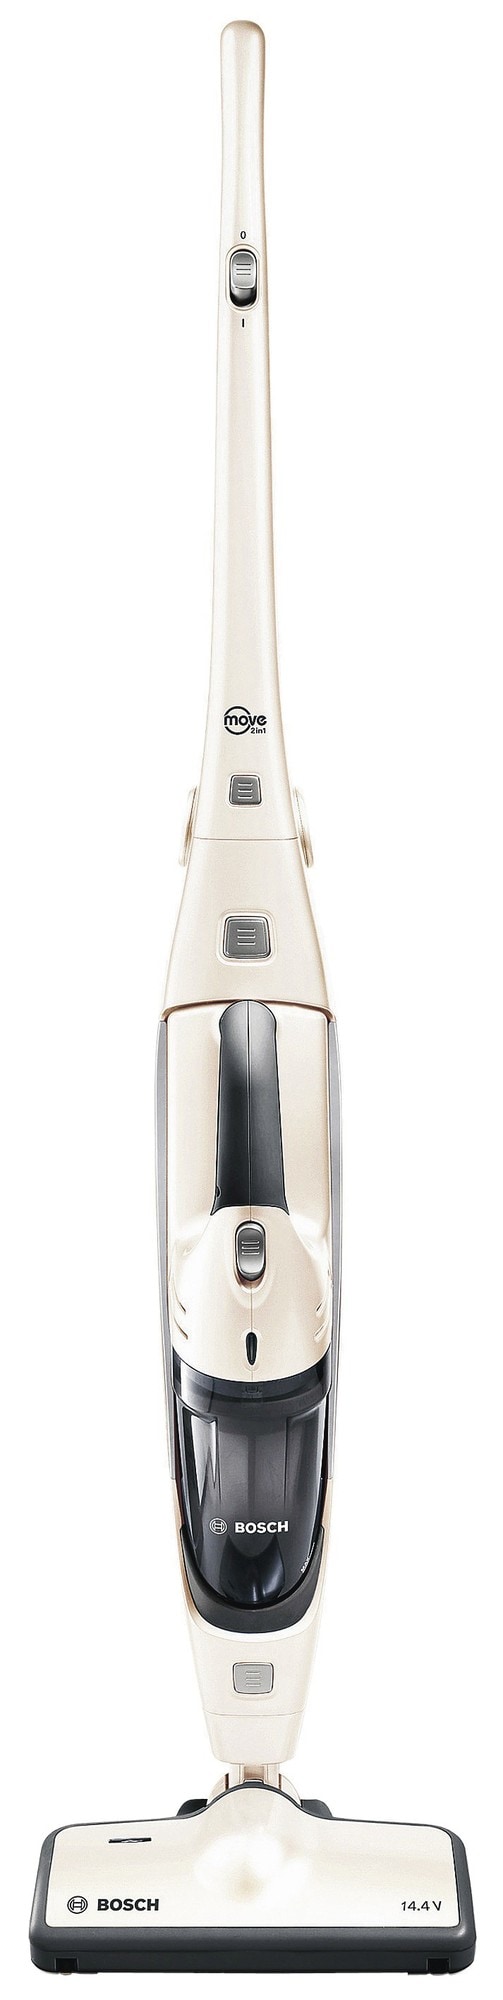 Bosch håndstøvsuger BBHMOVE1 (hvit) - Elkjøp